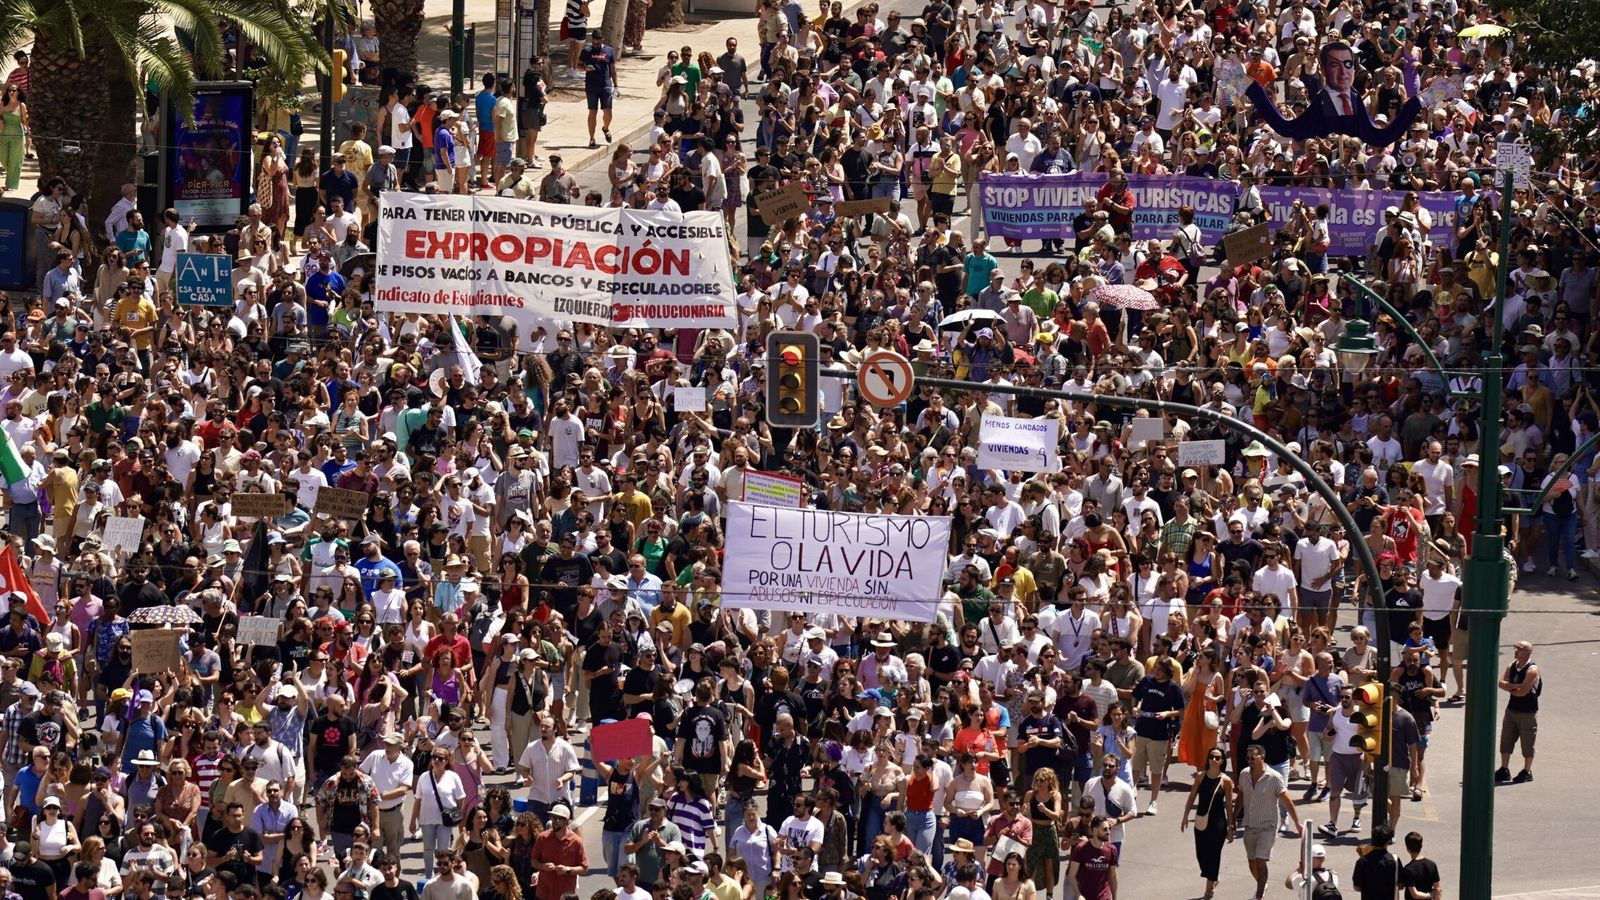 ¿No hay un hartazgo? Mira a Málaga: miles de personas se manifiestan contra la 'turistificación' y su efecto en la vivienda